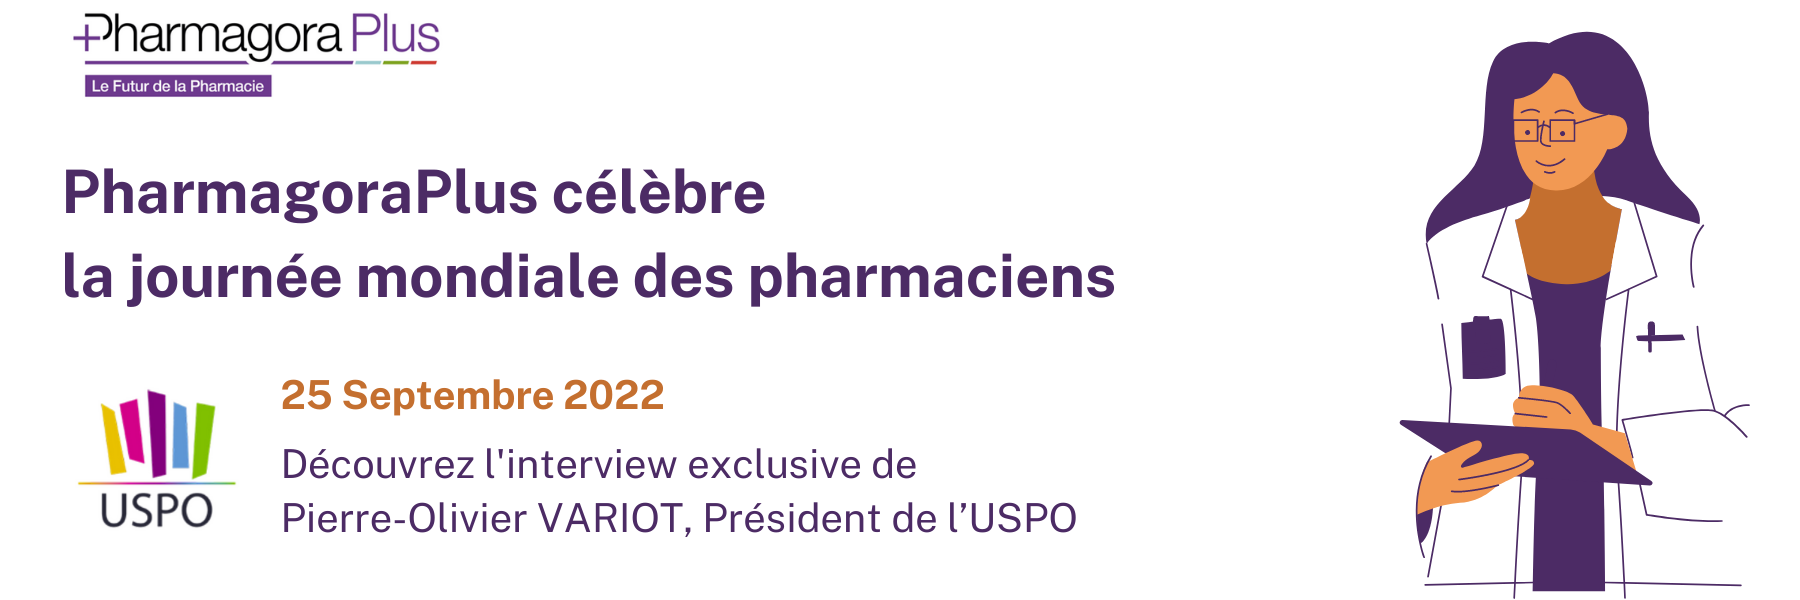 Journée mondiale des pharmaciens: L'interview de Pierre-Olivier VARIOT, Président de l’USPO